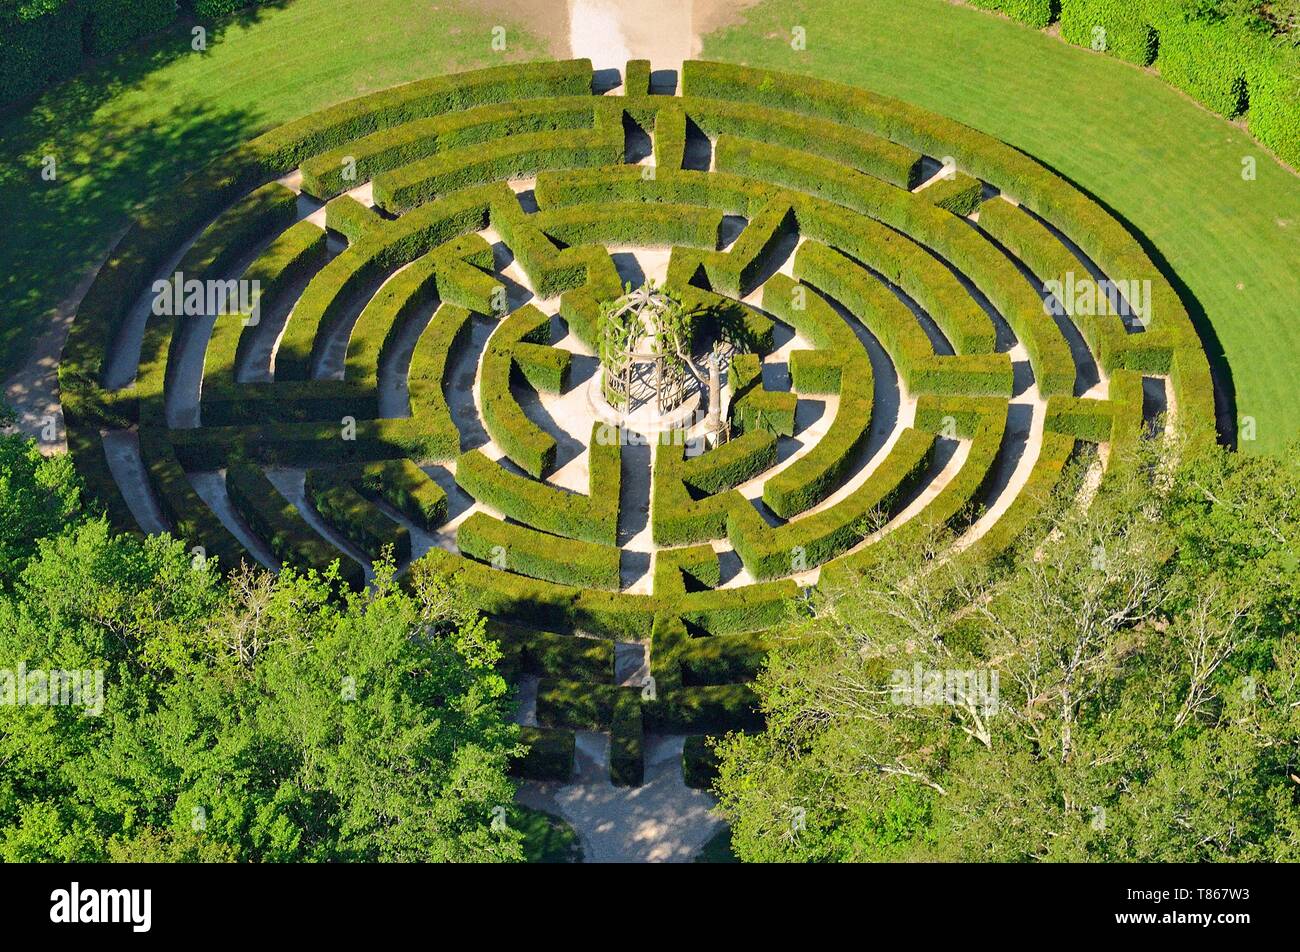 Francia, Indre et Loire, Chenonceau, castillo de Chenonceau jardín (vista aérea) Foto de stock